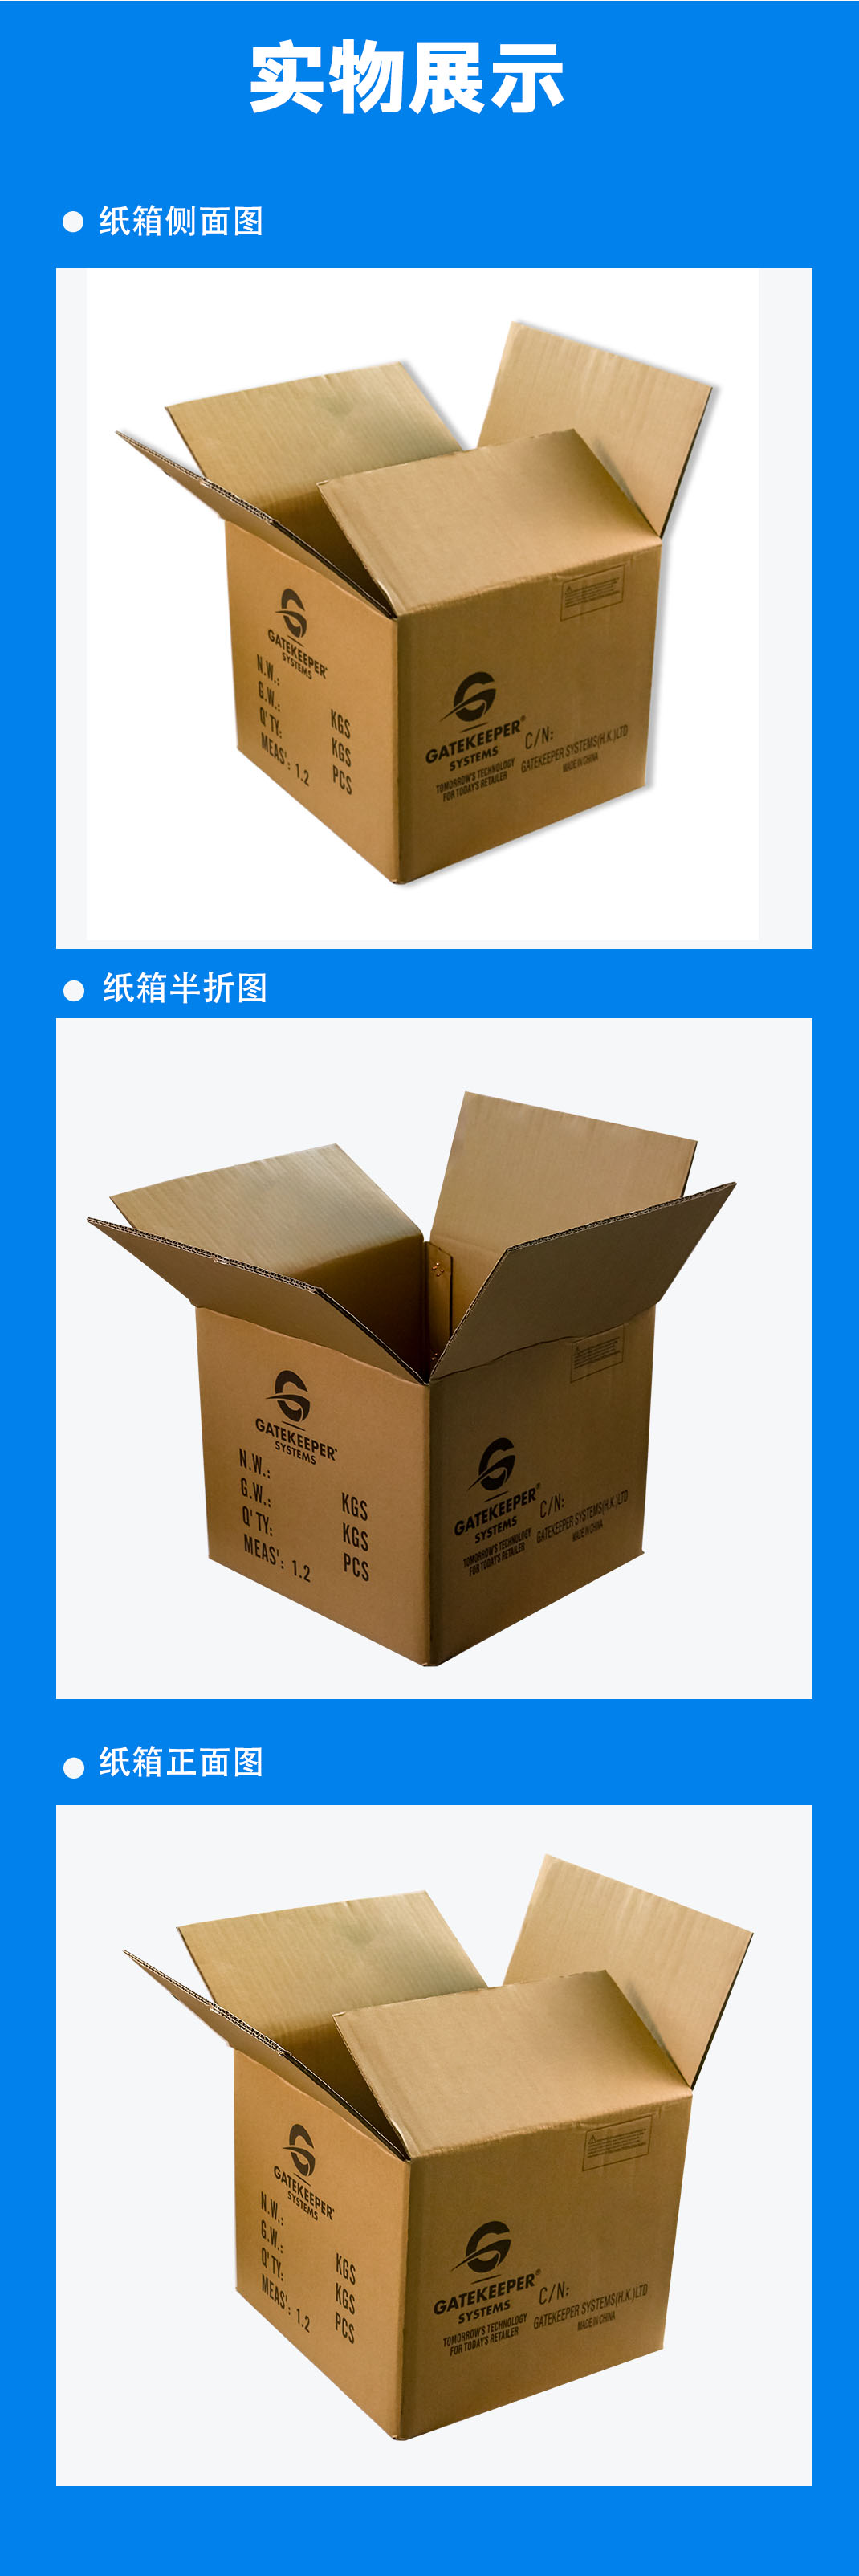 重庆纸箱常用的印刷分类